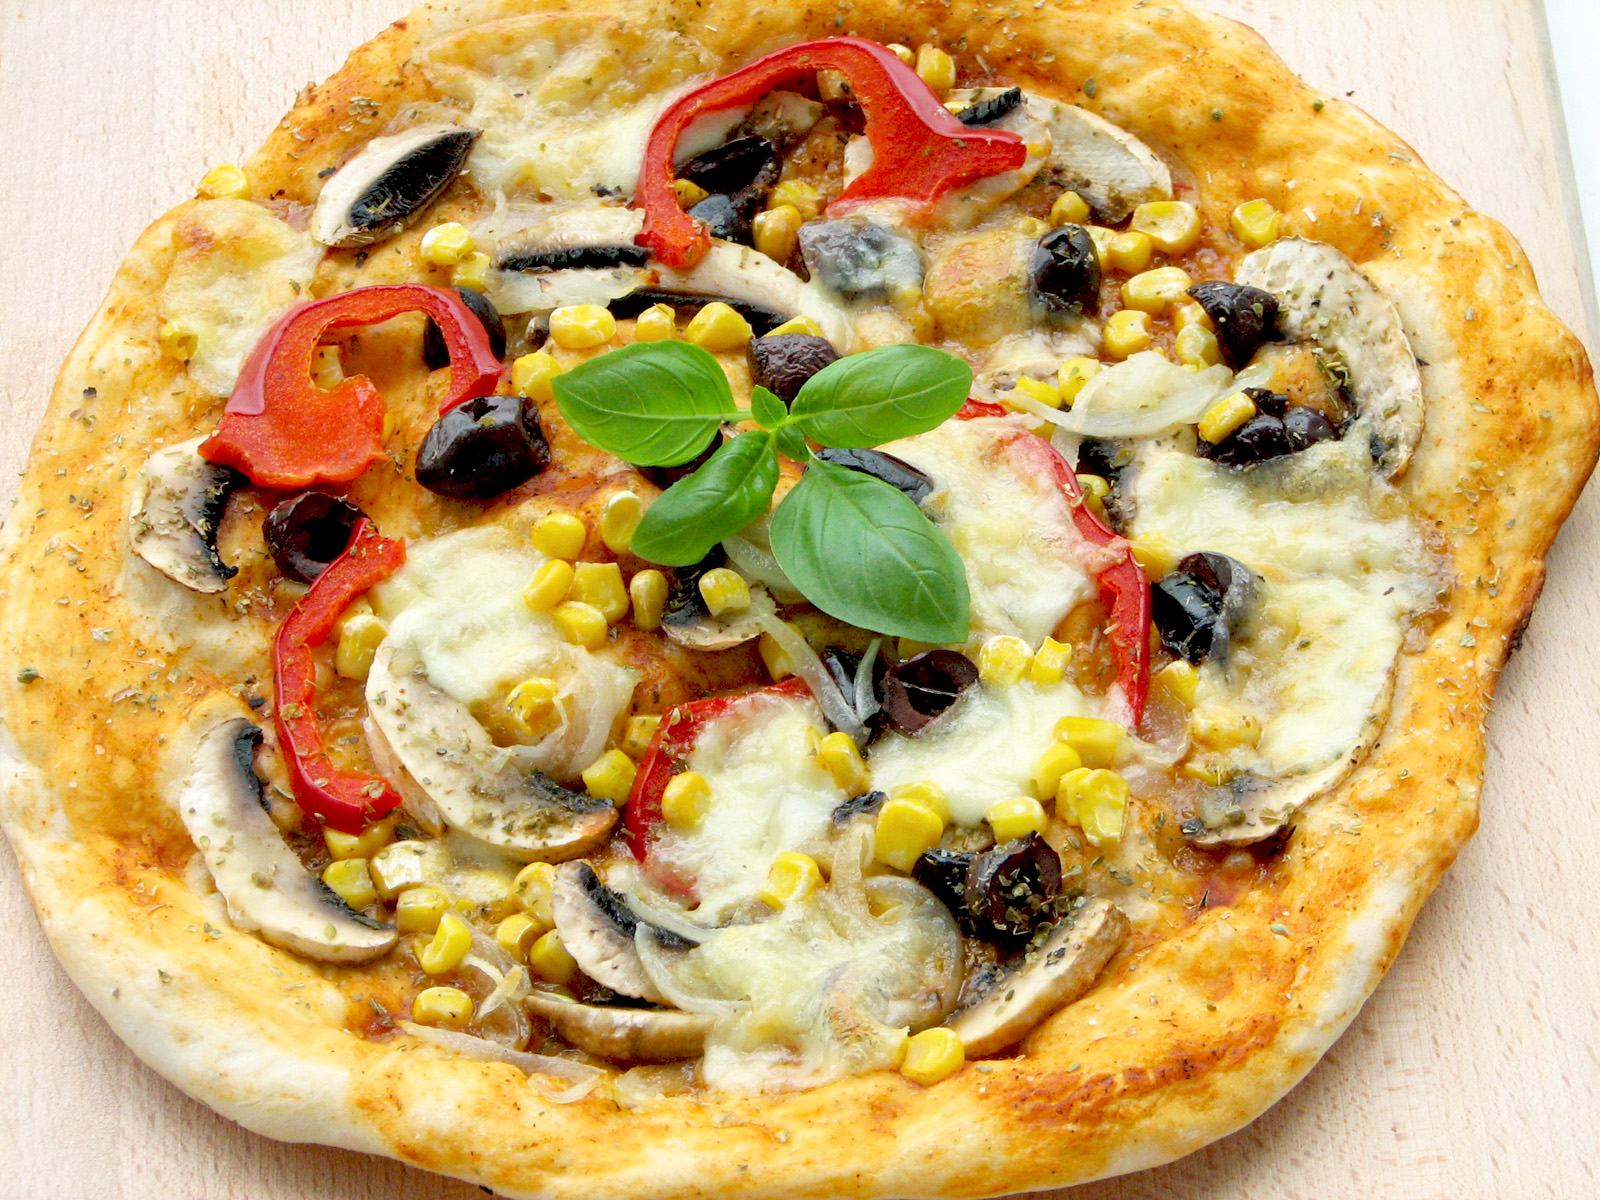 Pizza vegetariana cu blat subtire si crocant